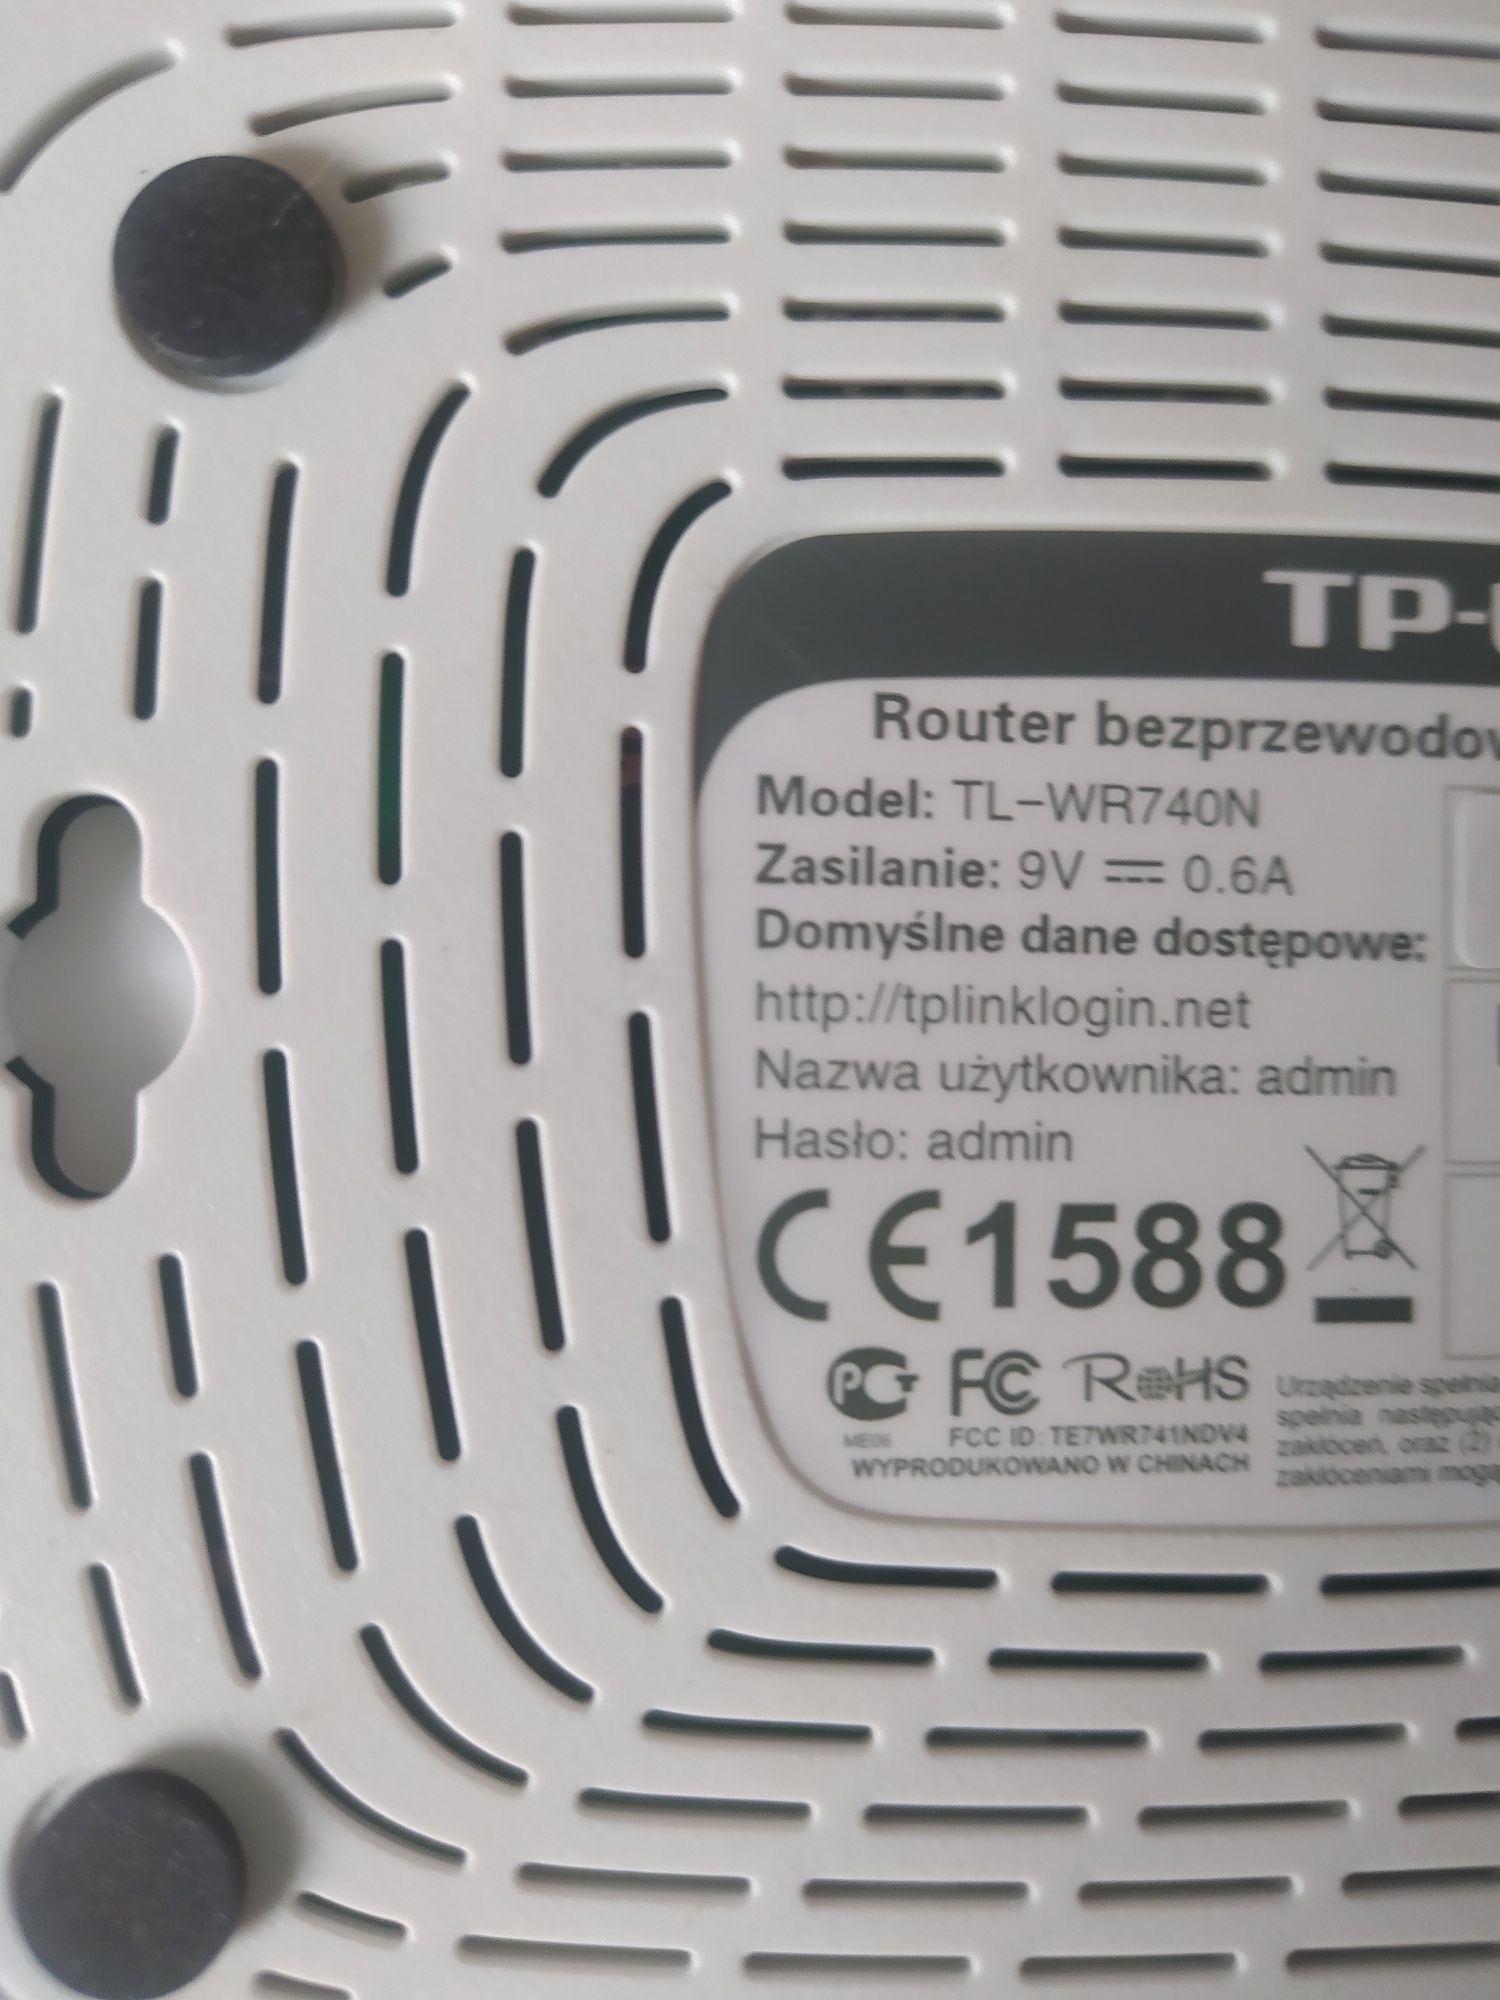 Router bezprzewodowy TL-WR740N